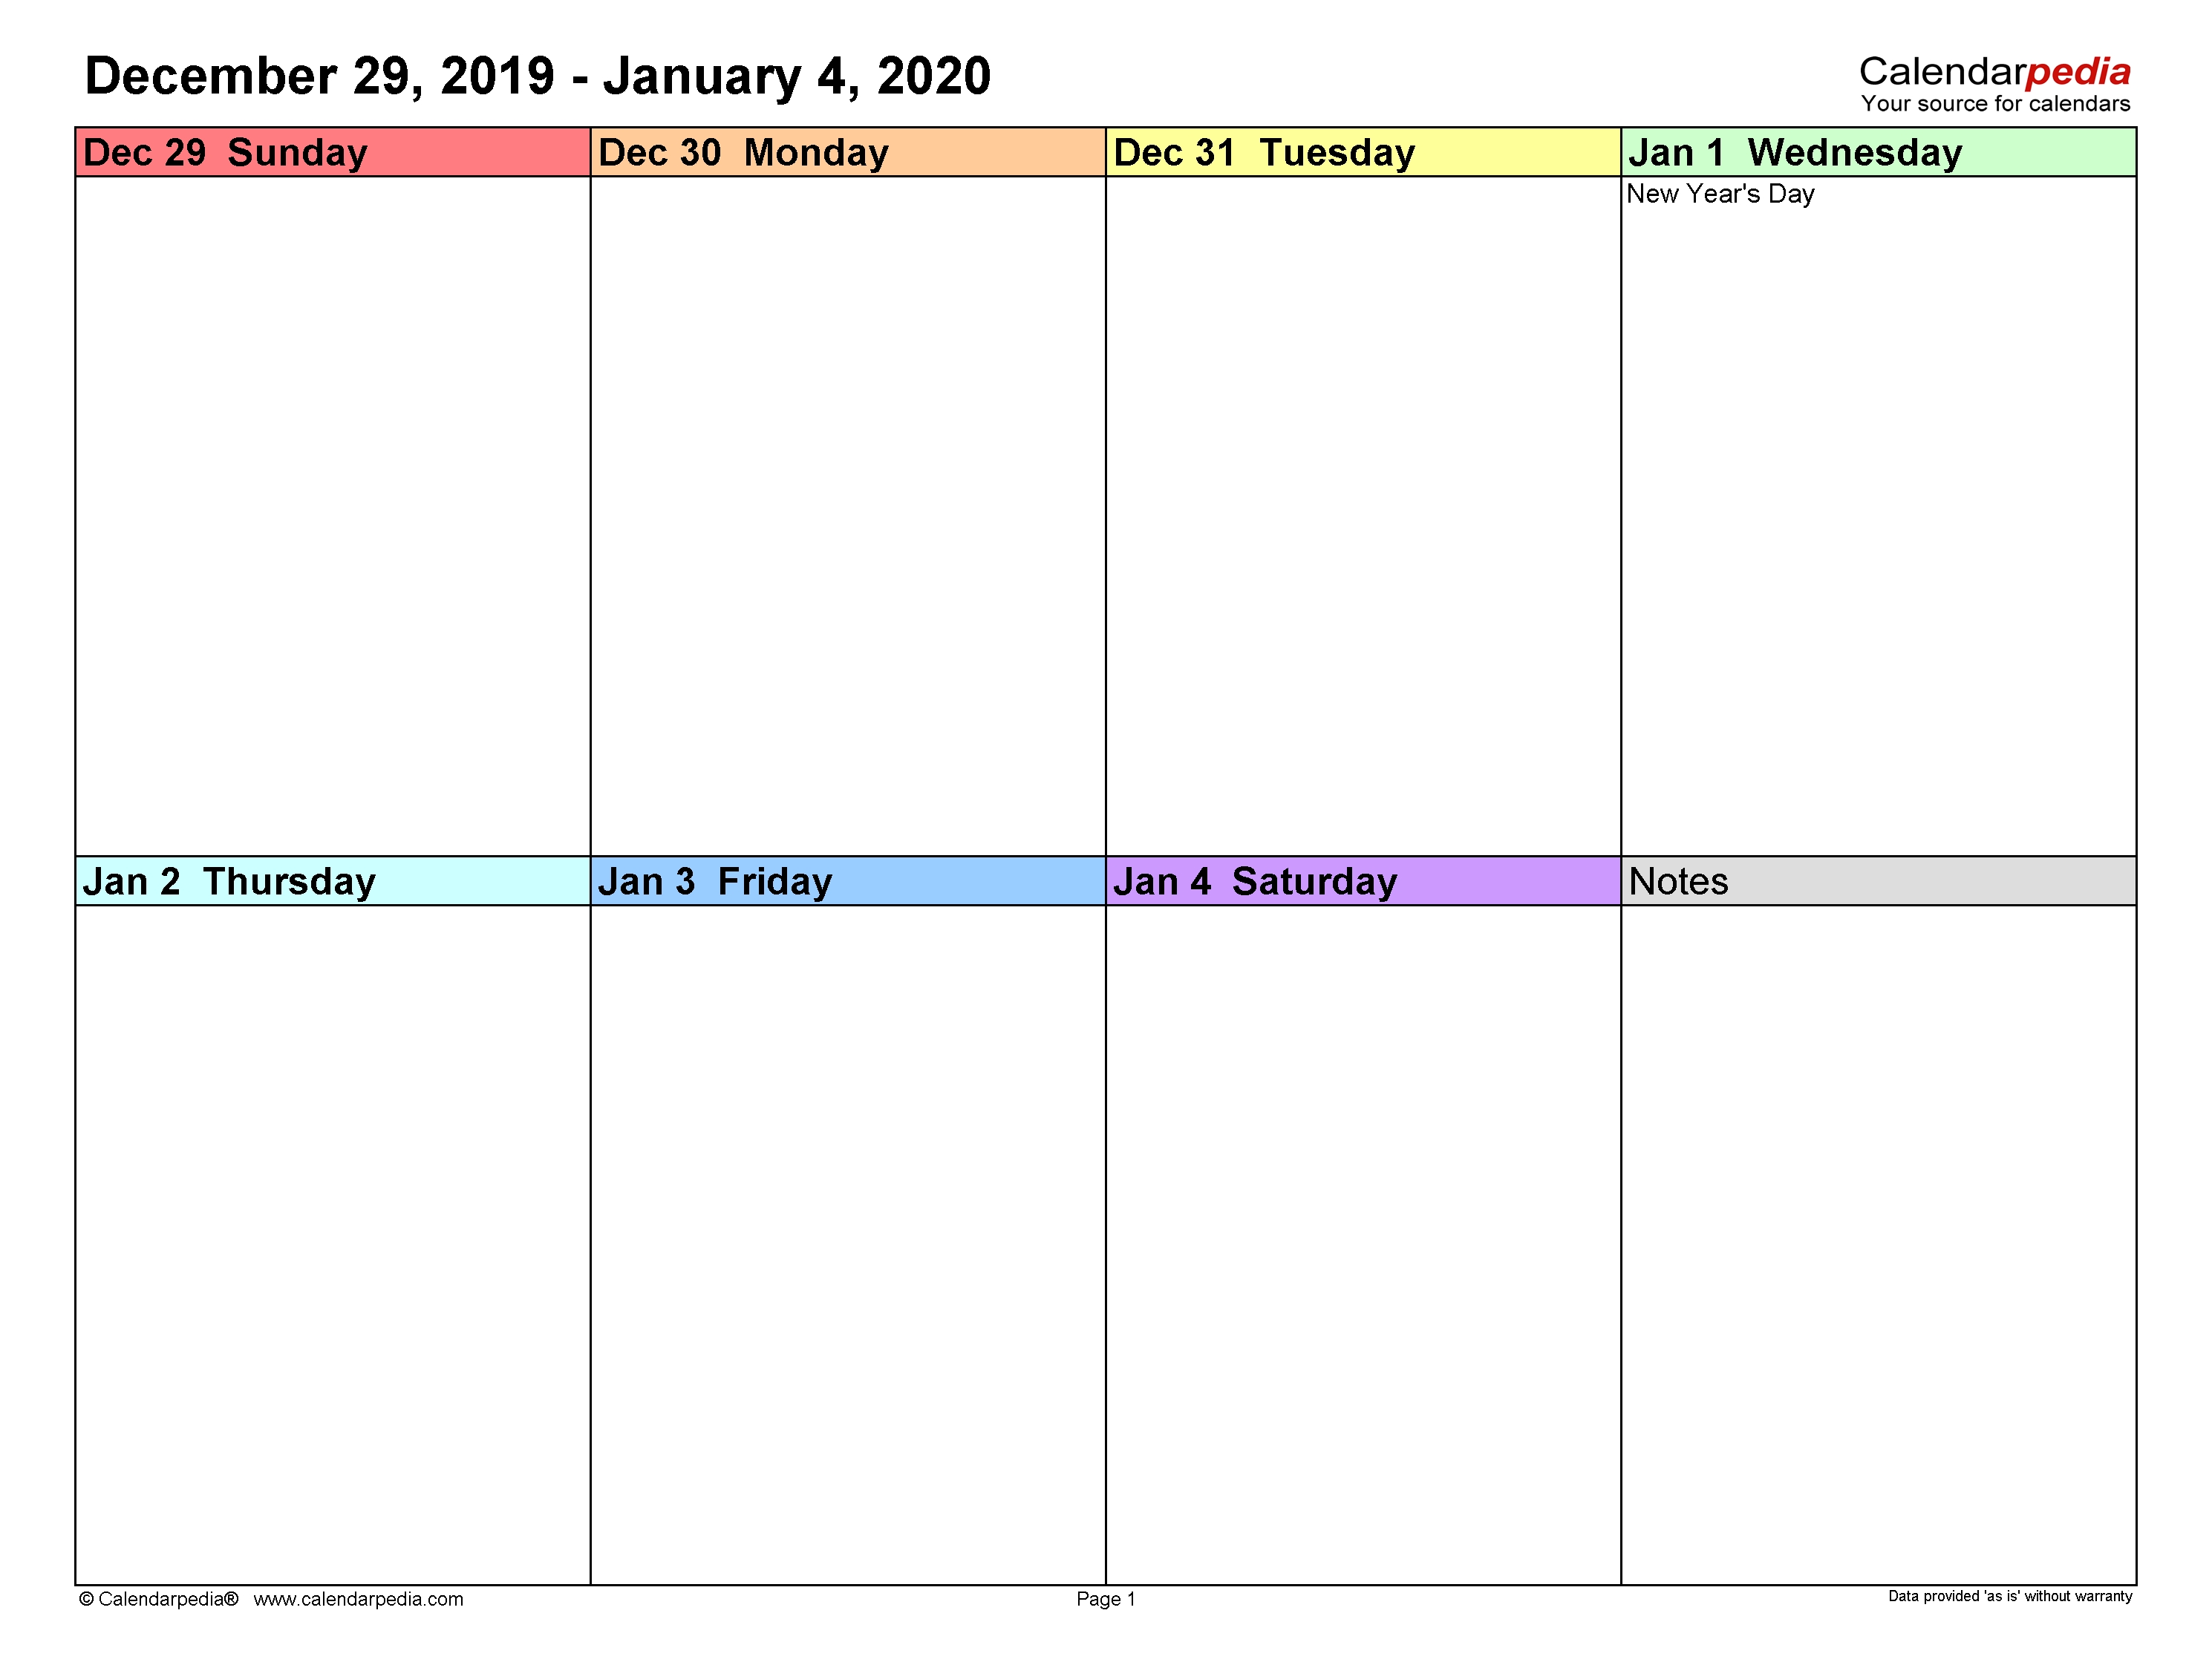 Weekly Calendars 2020 For Word - 12 Free Printable Templates 2 Week Calendar Template Word